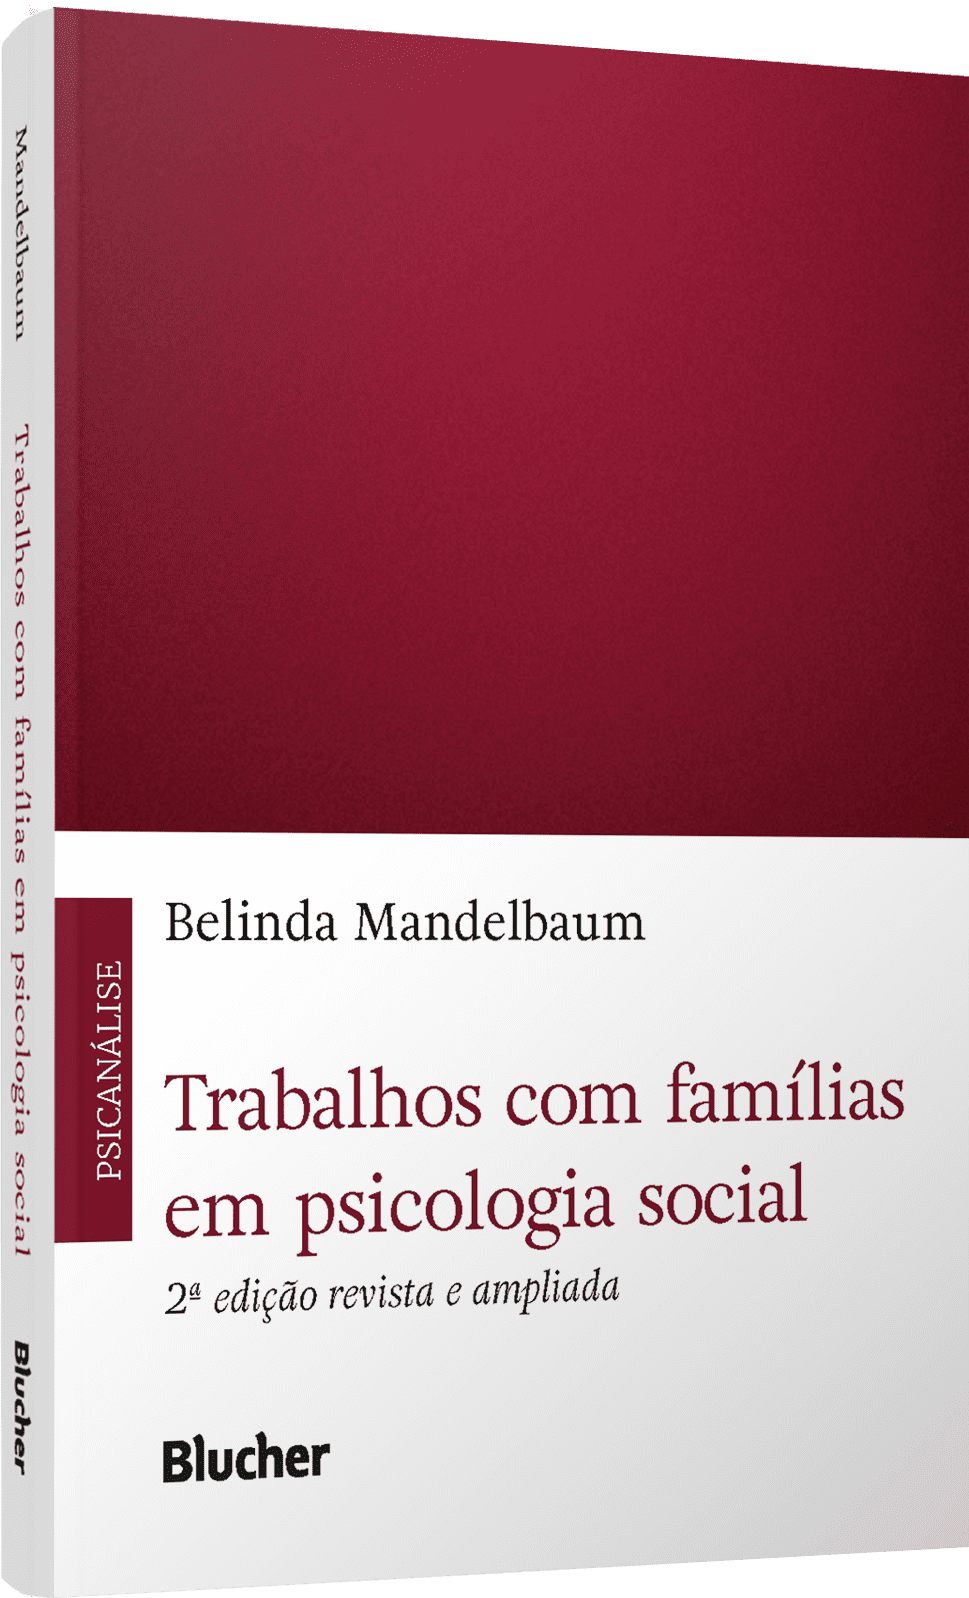 Psicologia Social - Psicologia Social